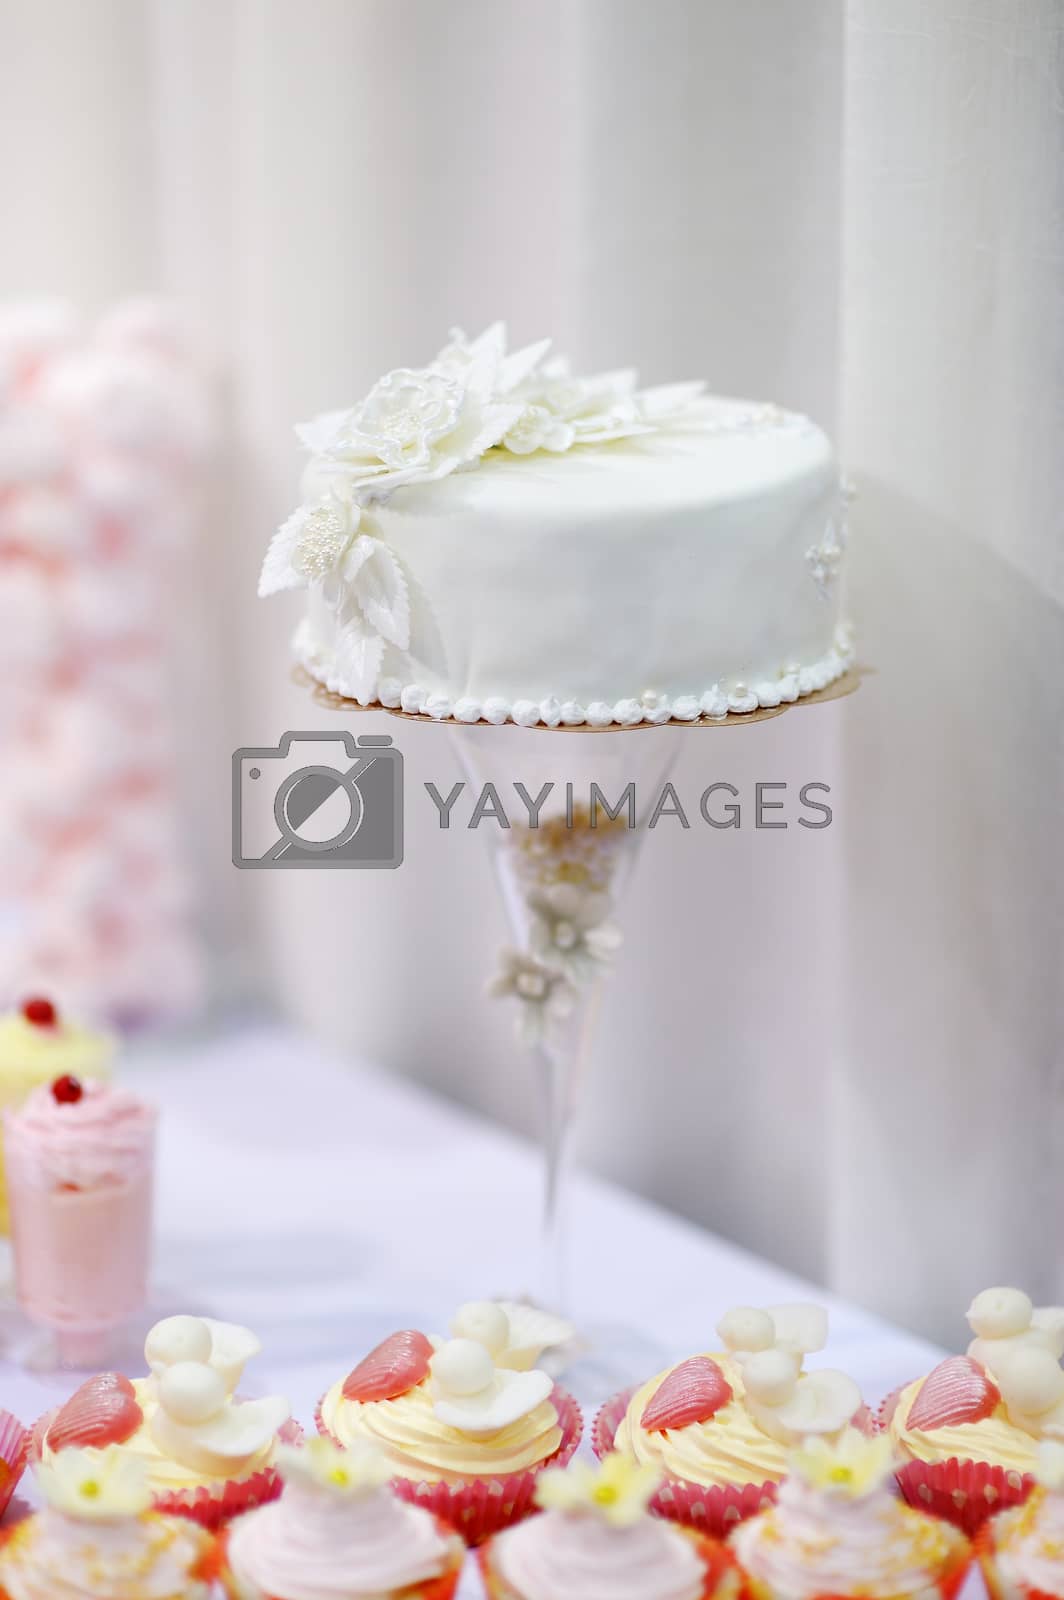 Royalty free image of Elegant wedding cake by maximkabb